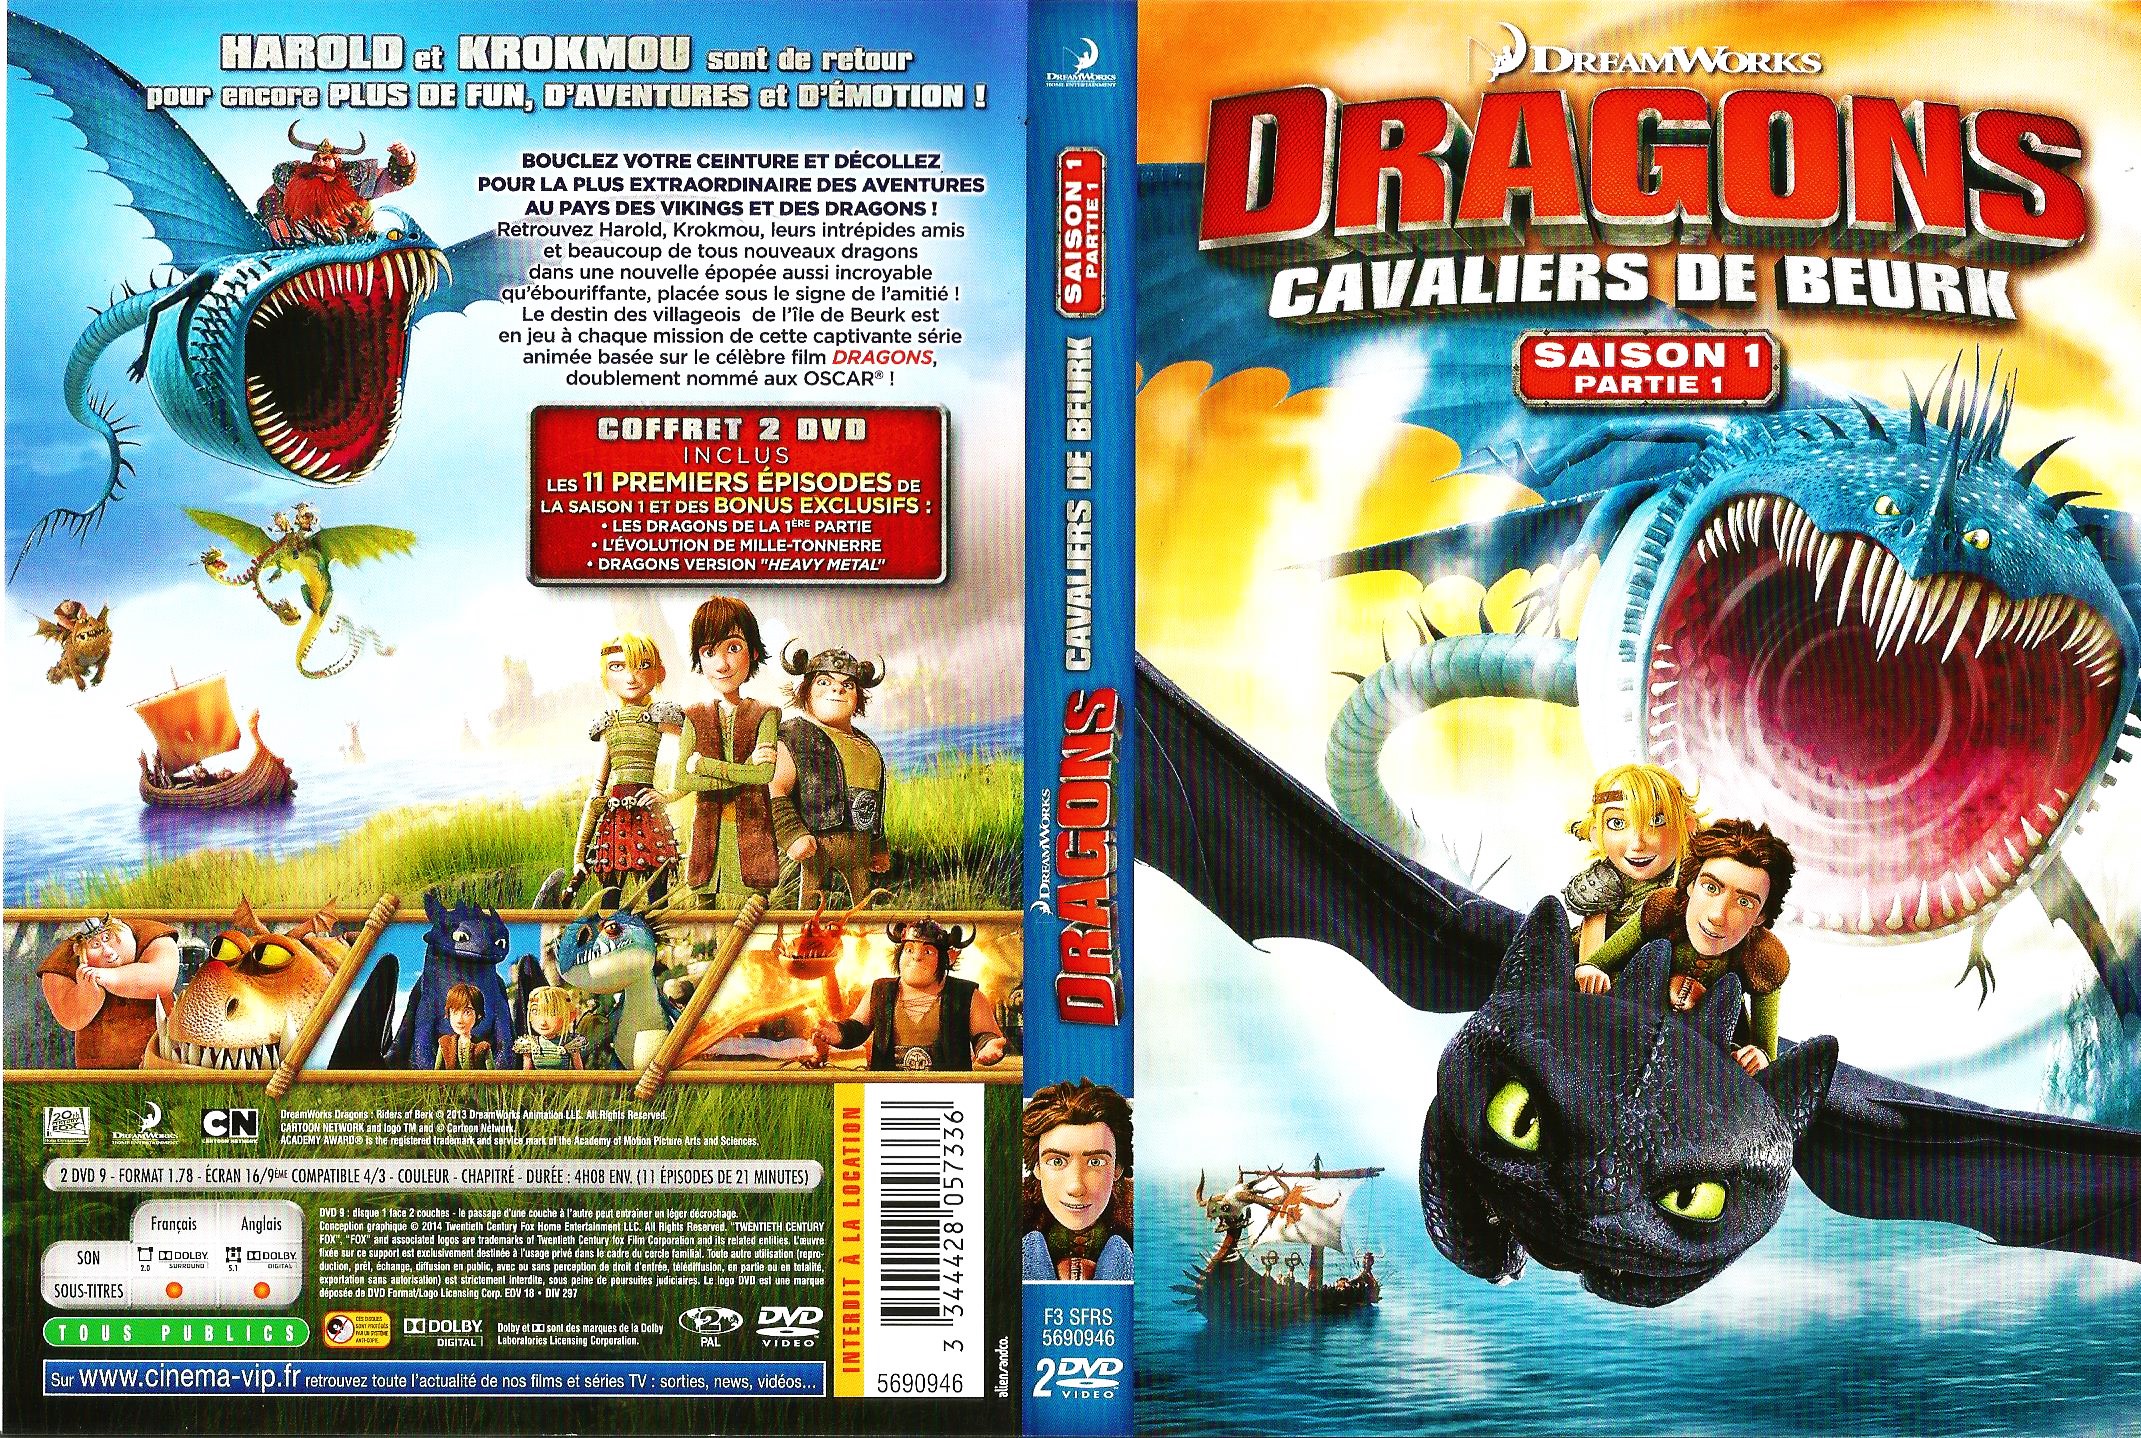 Jaquette DVD Dragons saison 1 partie 1